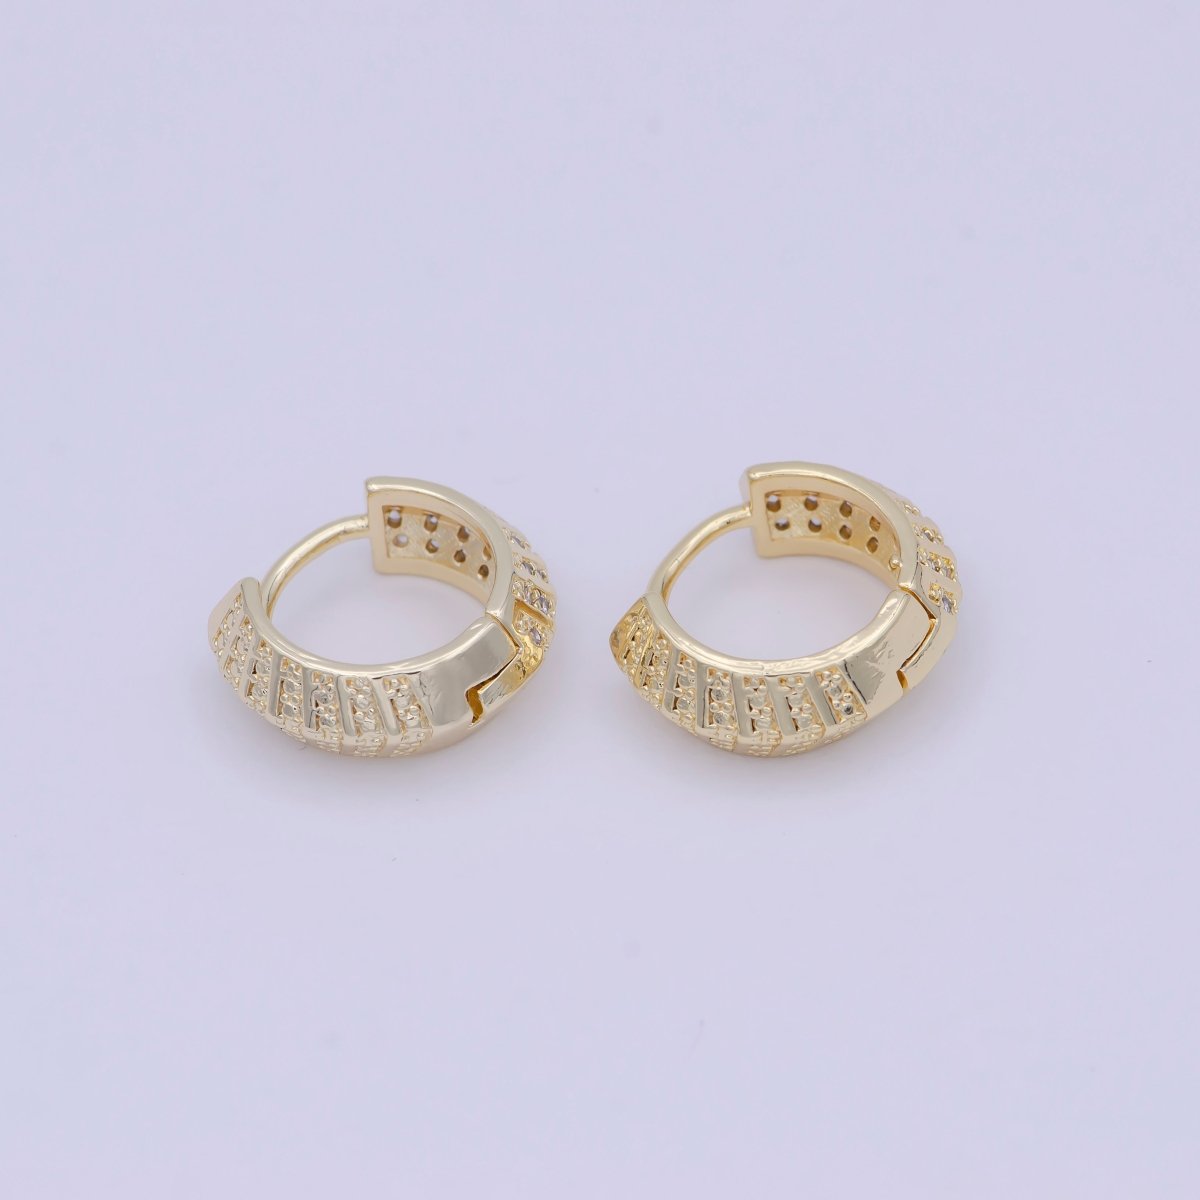 Minimalist Gold Dome Hoop Earring Jewelry Wholesale Earring T-338 - DLUXCA